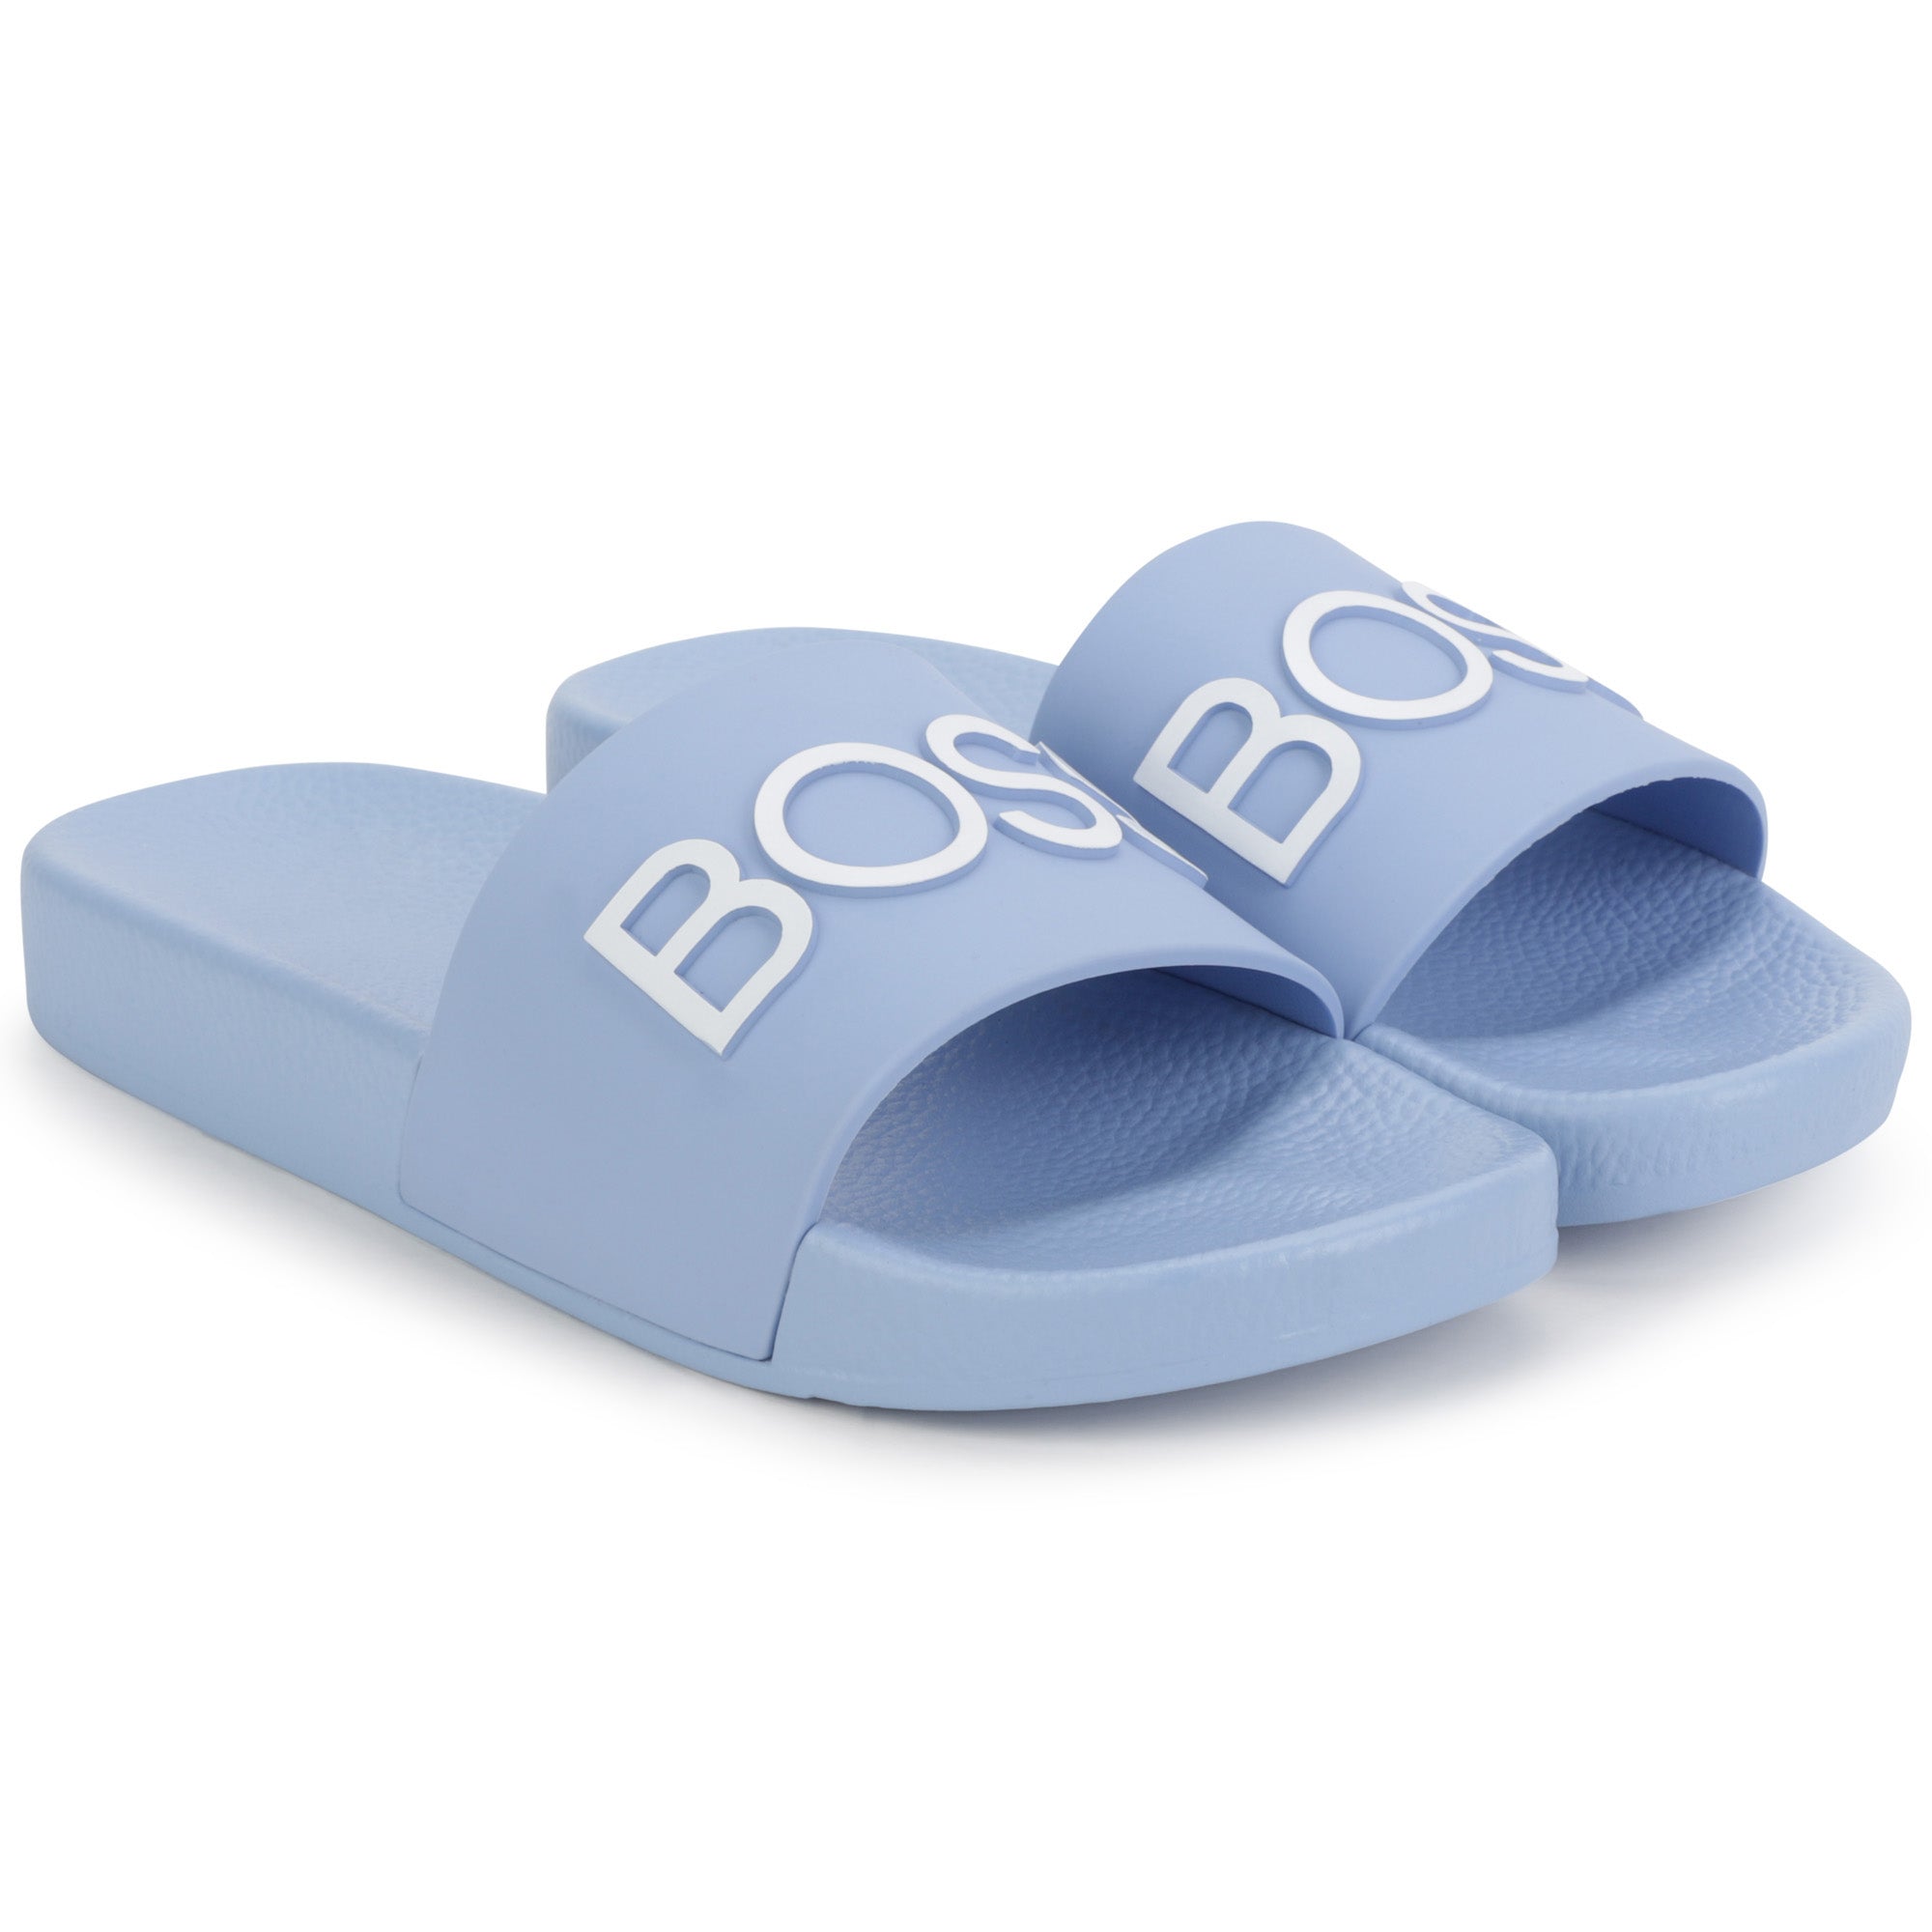 Hugo Boss Blue Slides